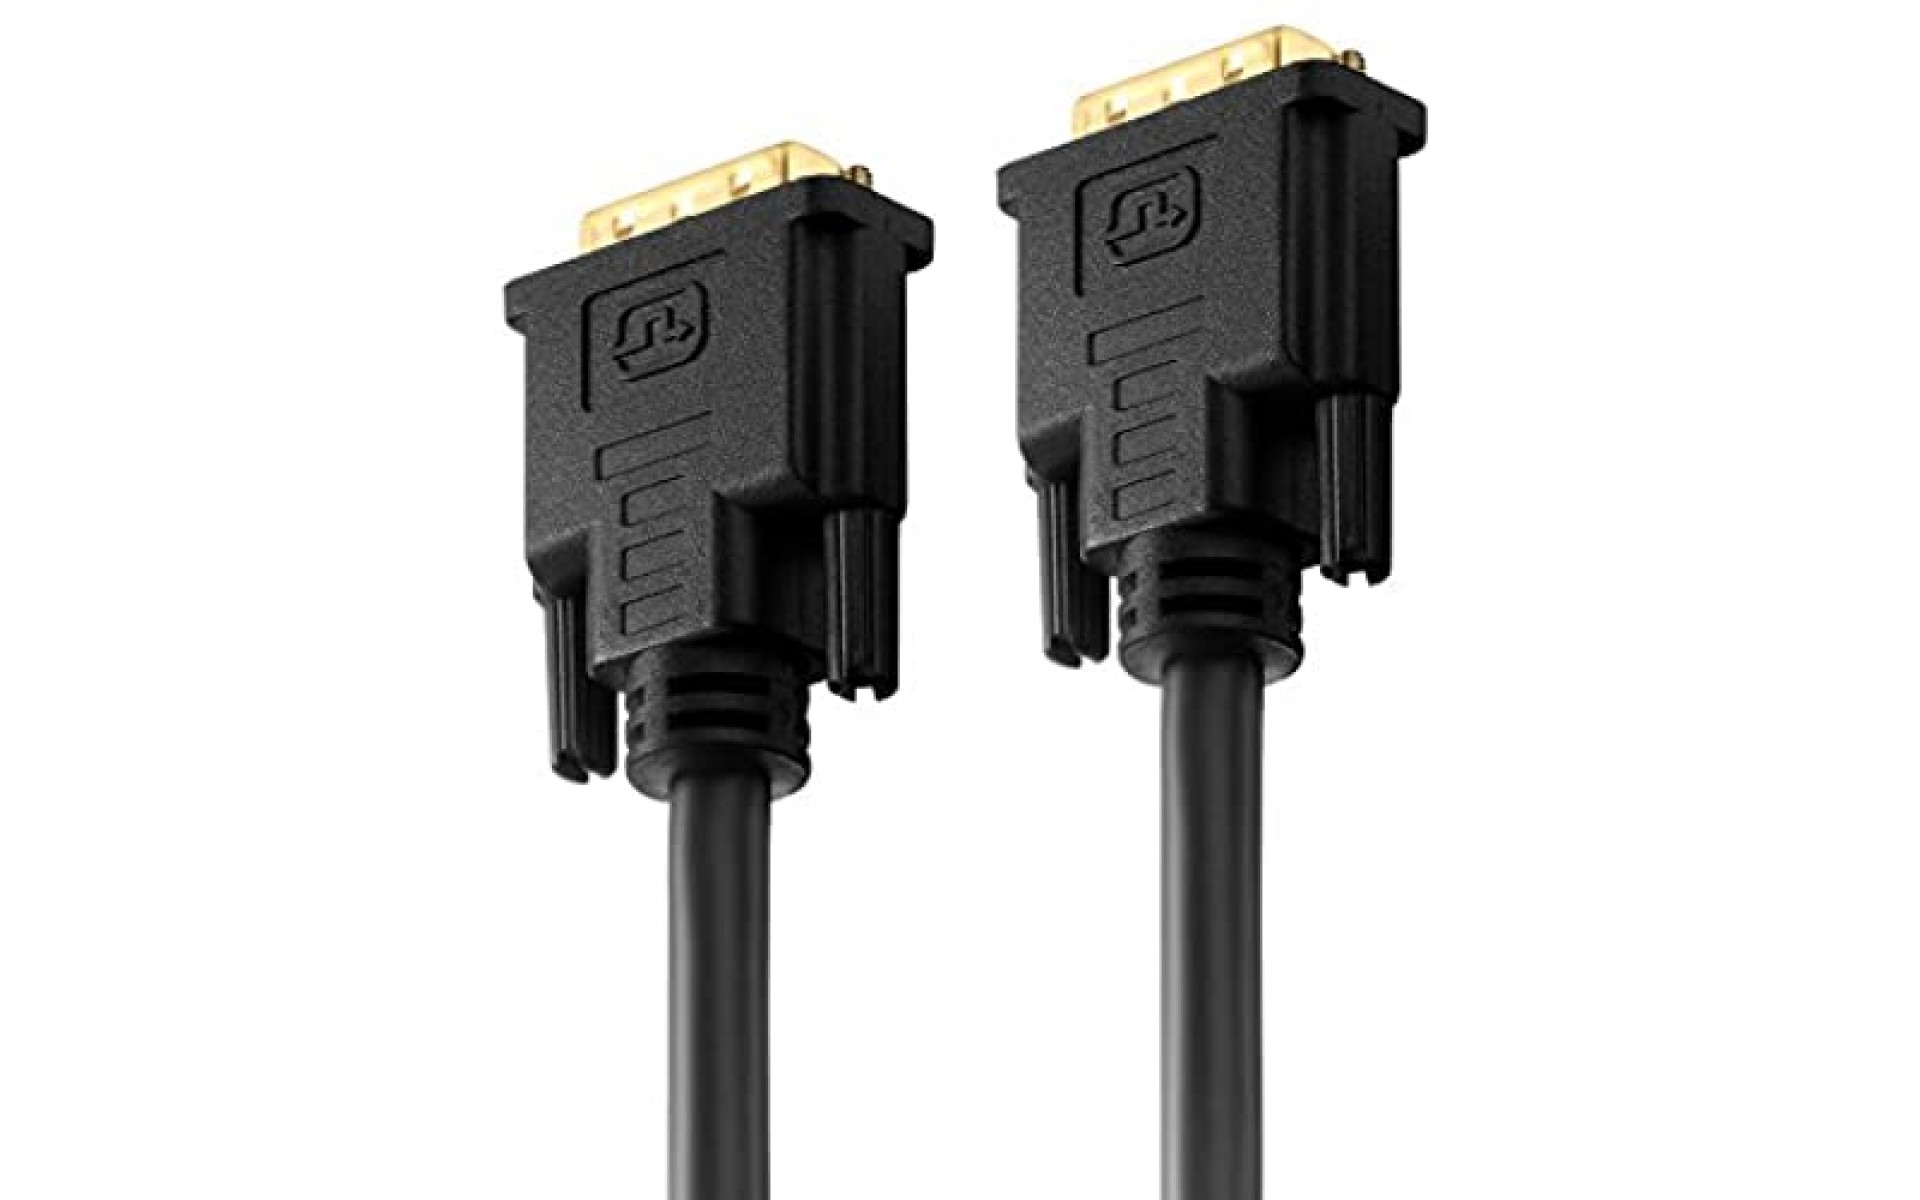 PureLink PI4200-015 Dual Link DVI Verbindungskabel (WUXGA (1920x1200)) DVI-D Stecker (24+1) auf DVI-D Stecker (24+1) zertifiziert 1 50m schwarz